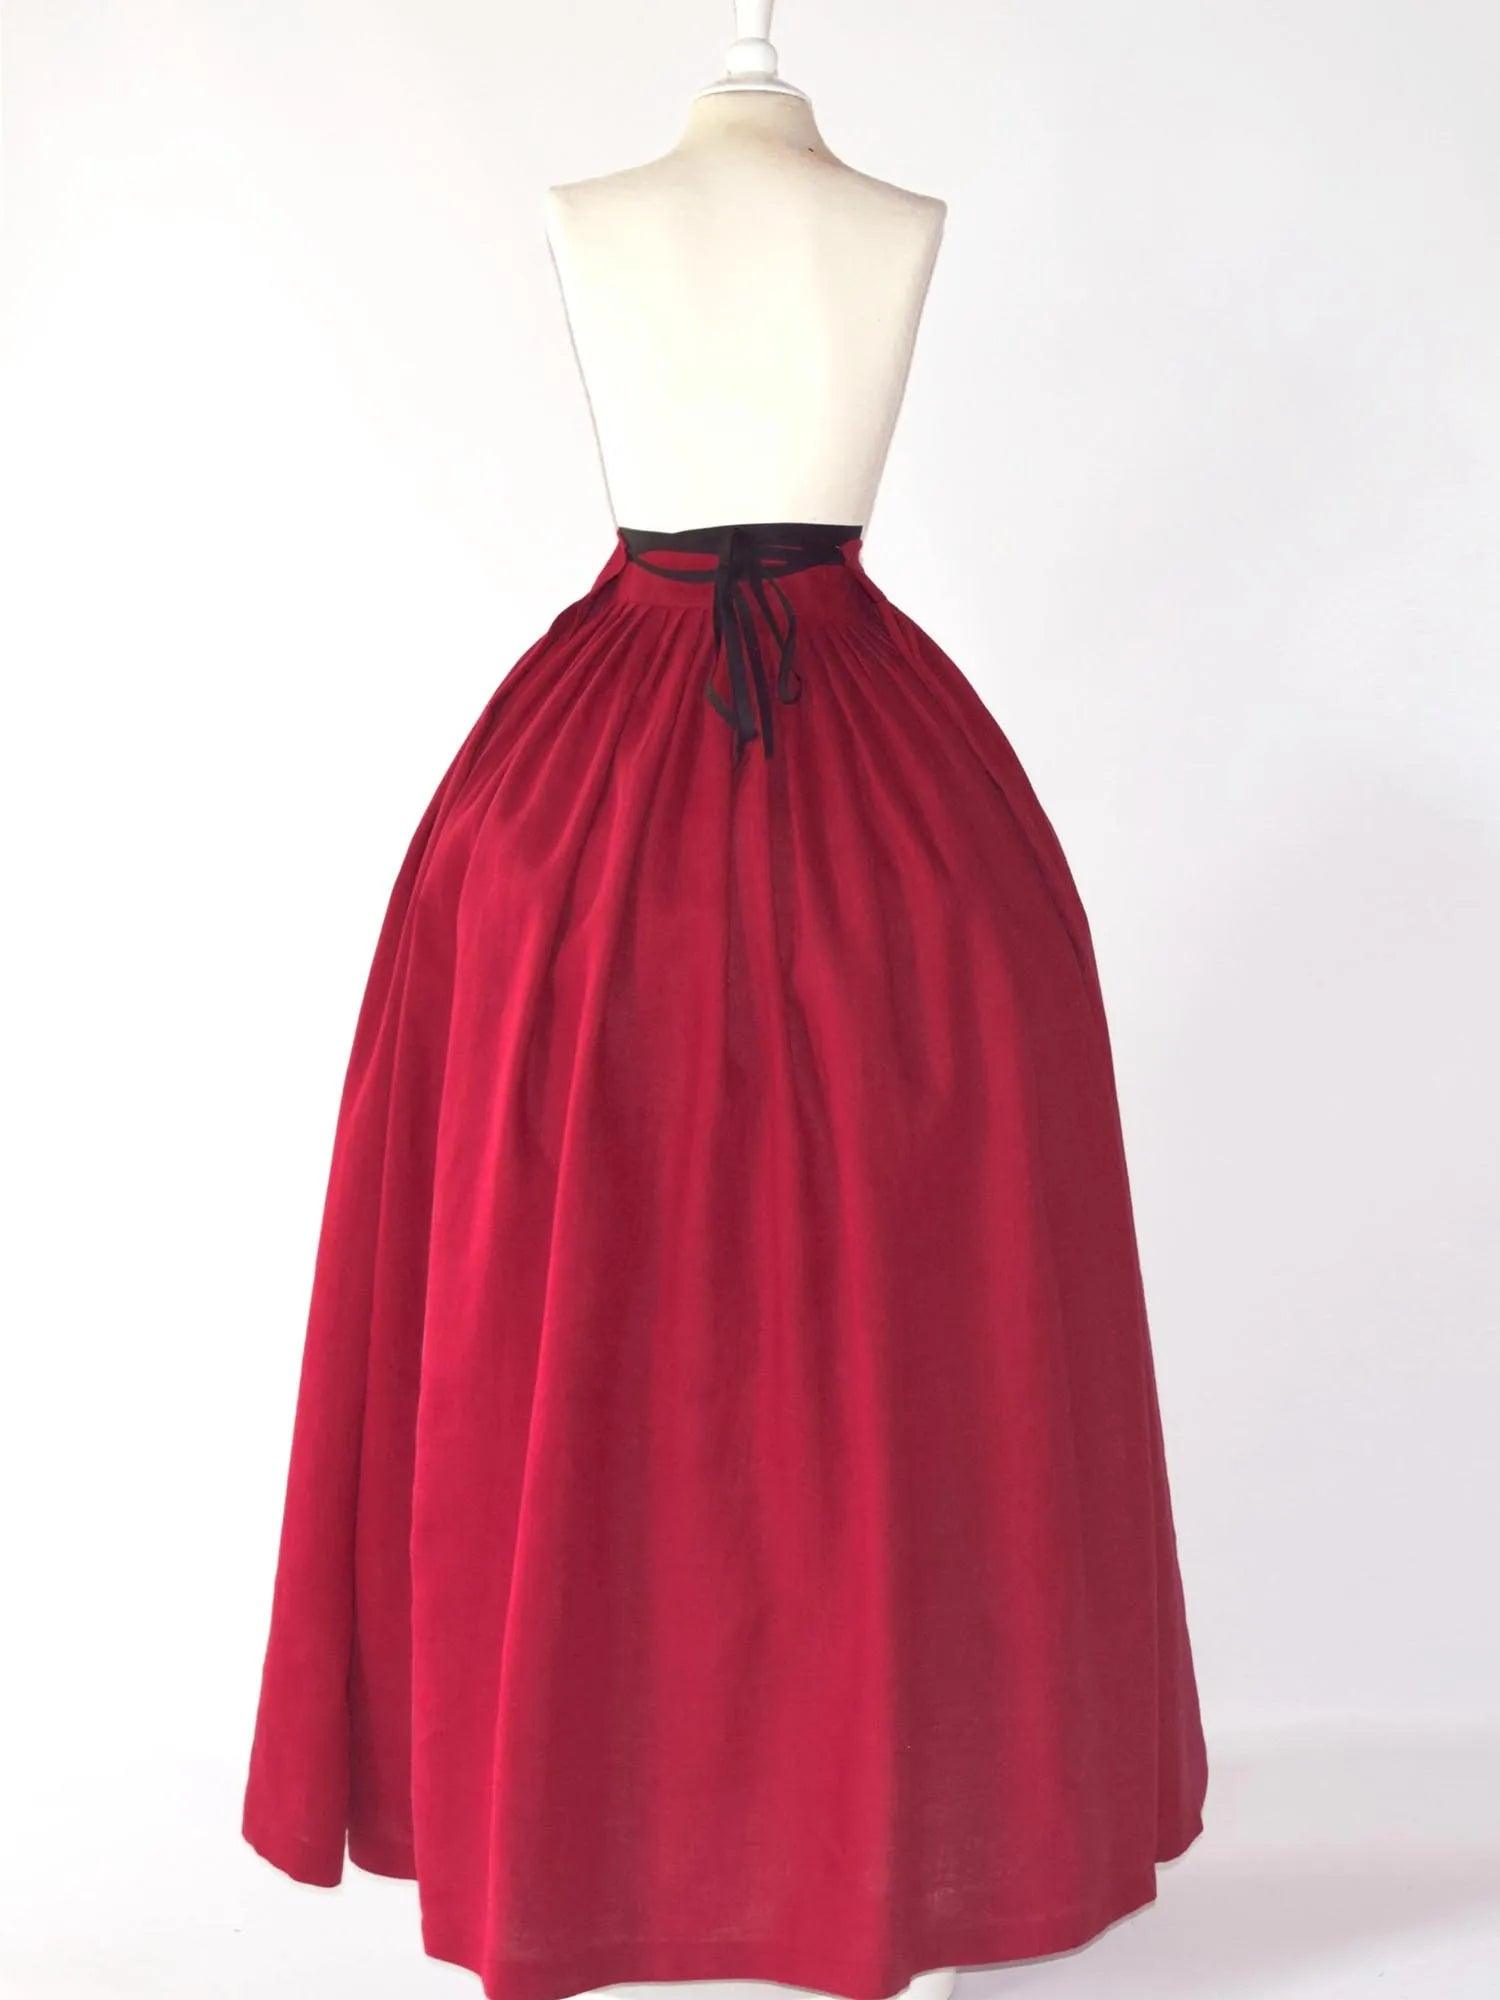 HELOISE, Historical Skirt in Cherry Red Linen - Atelier Serraspina